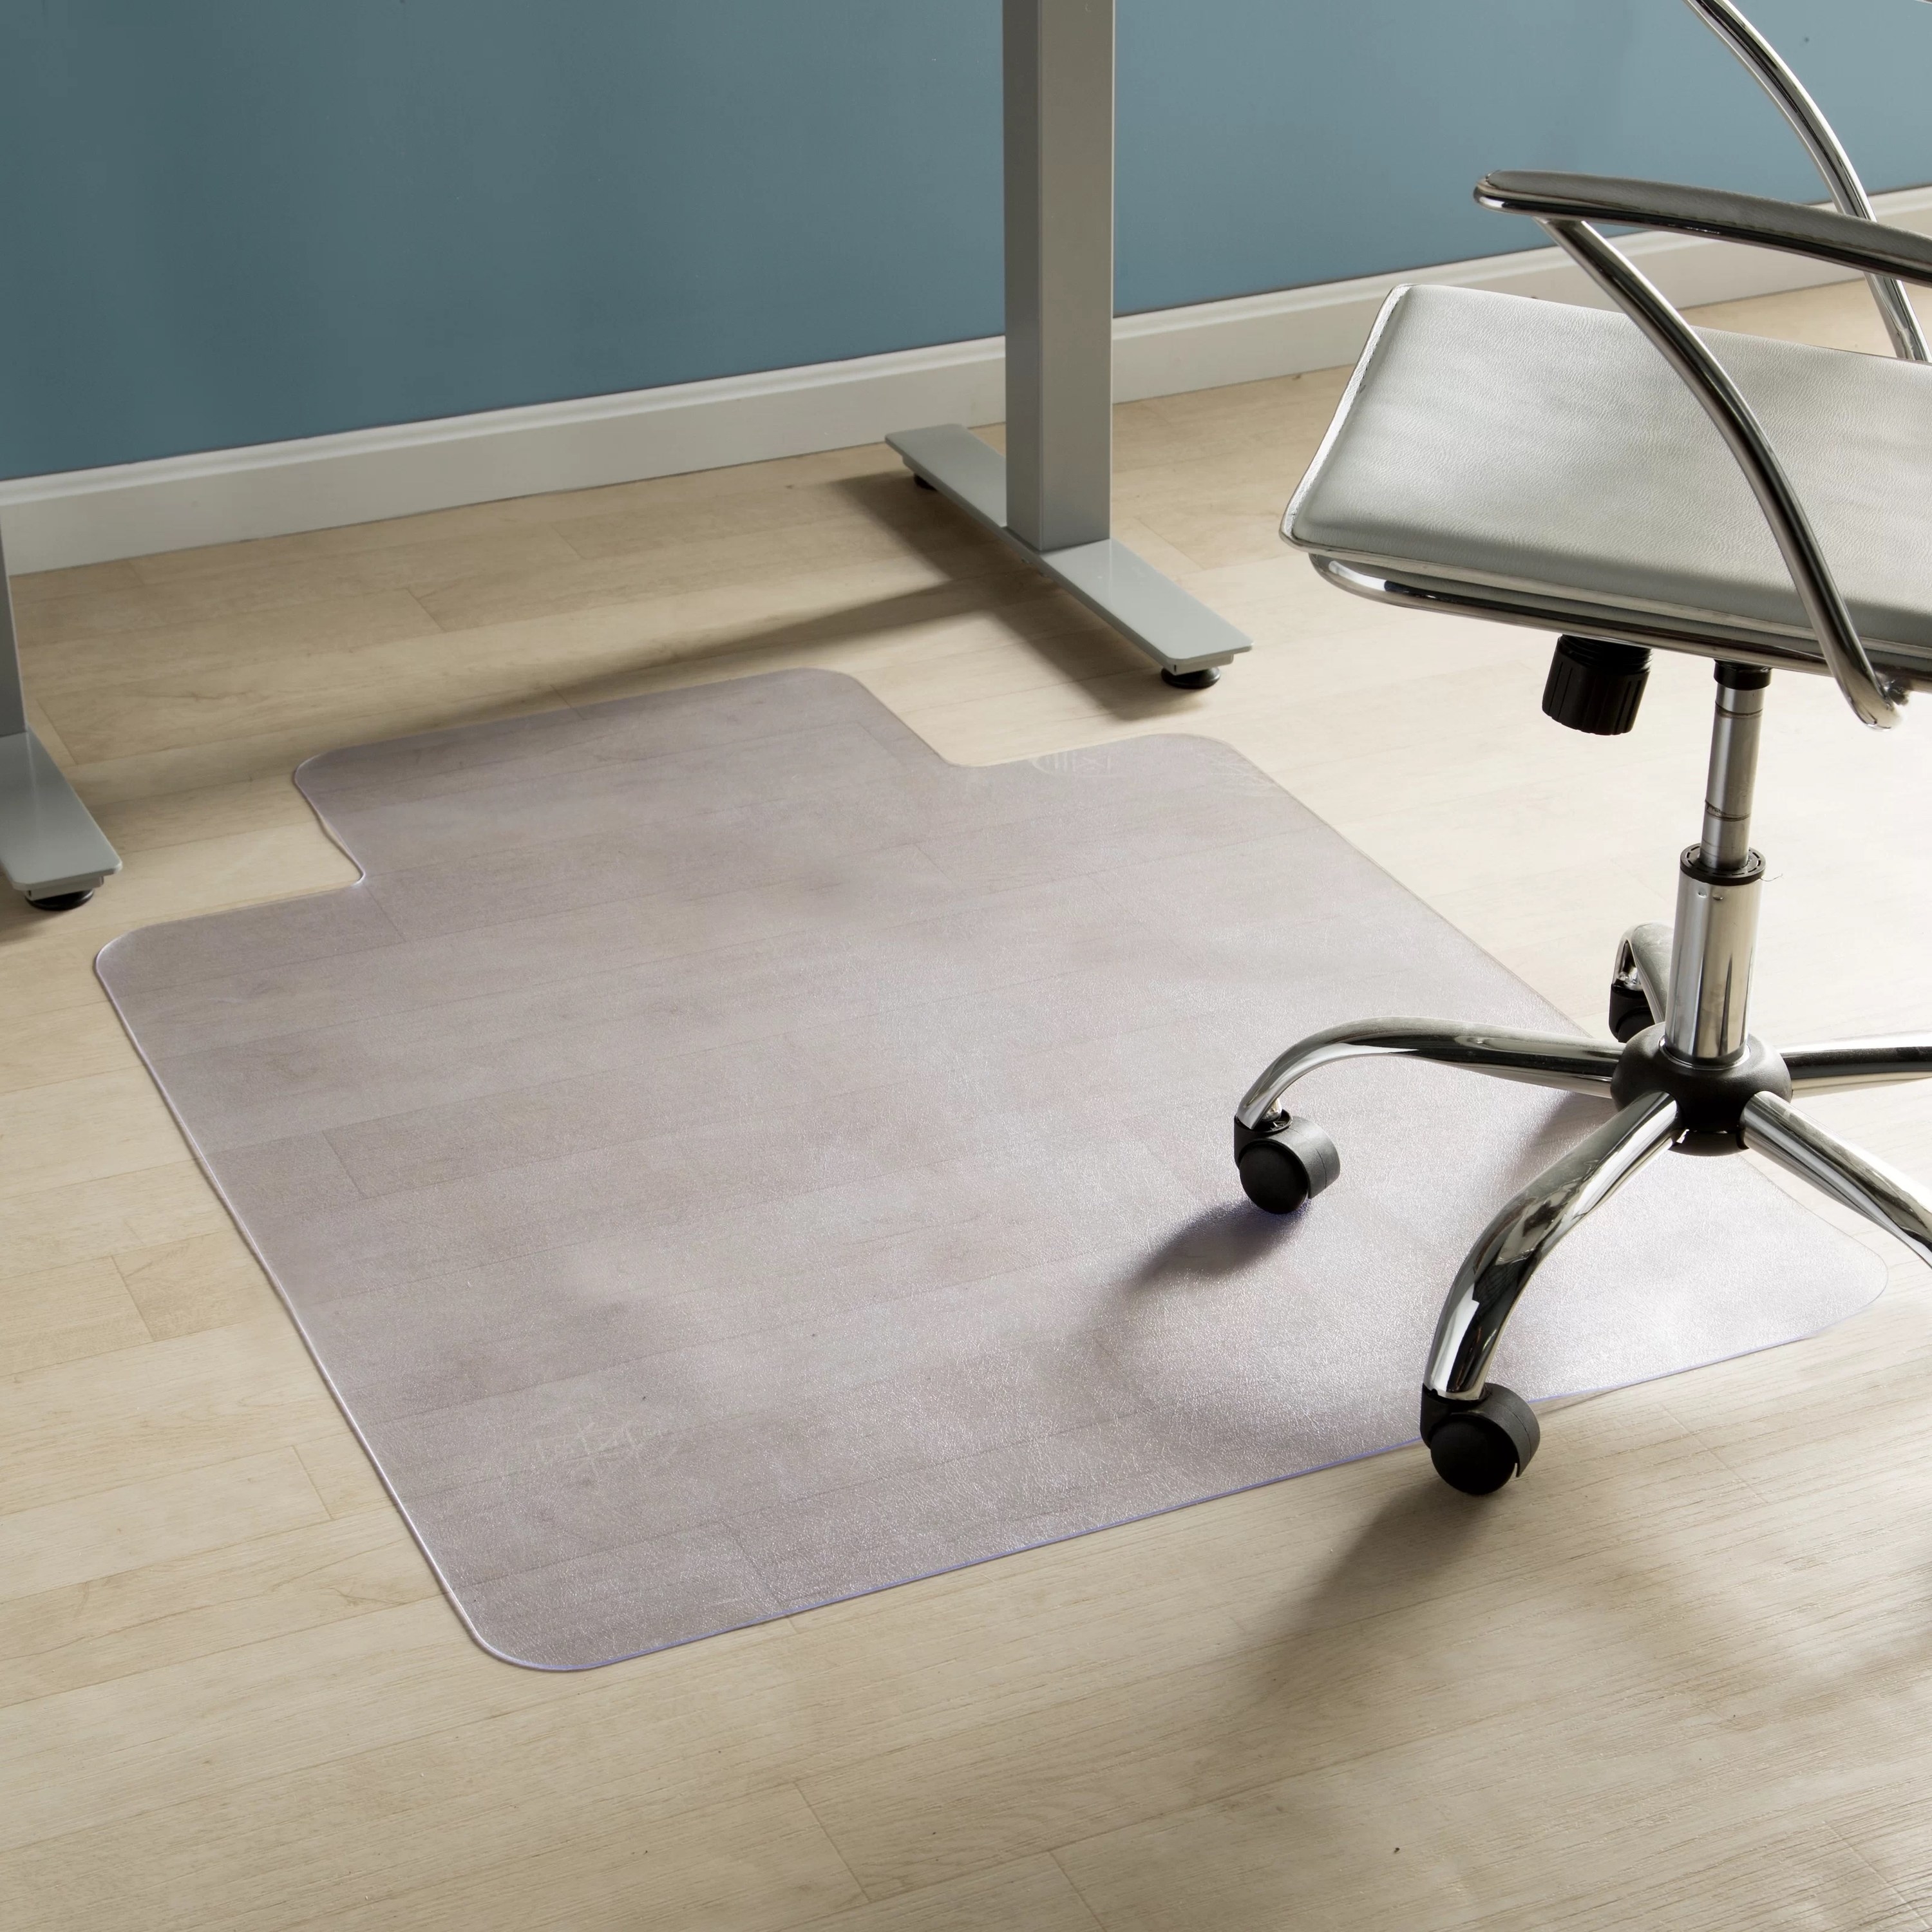 a hard floor chair mat next to an office chair